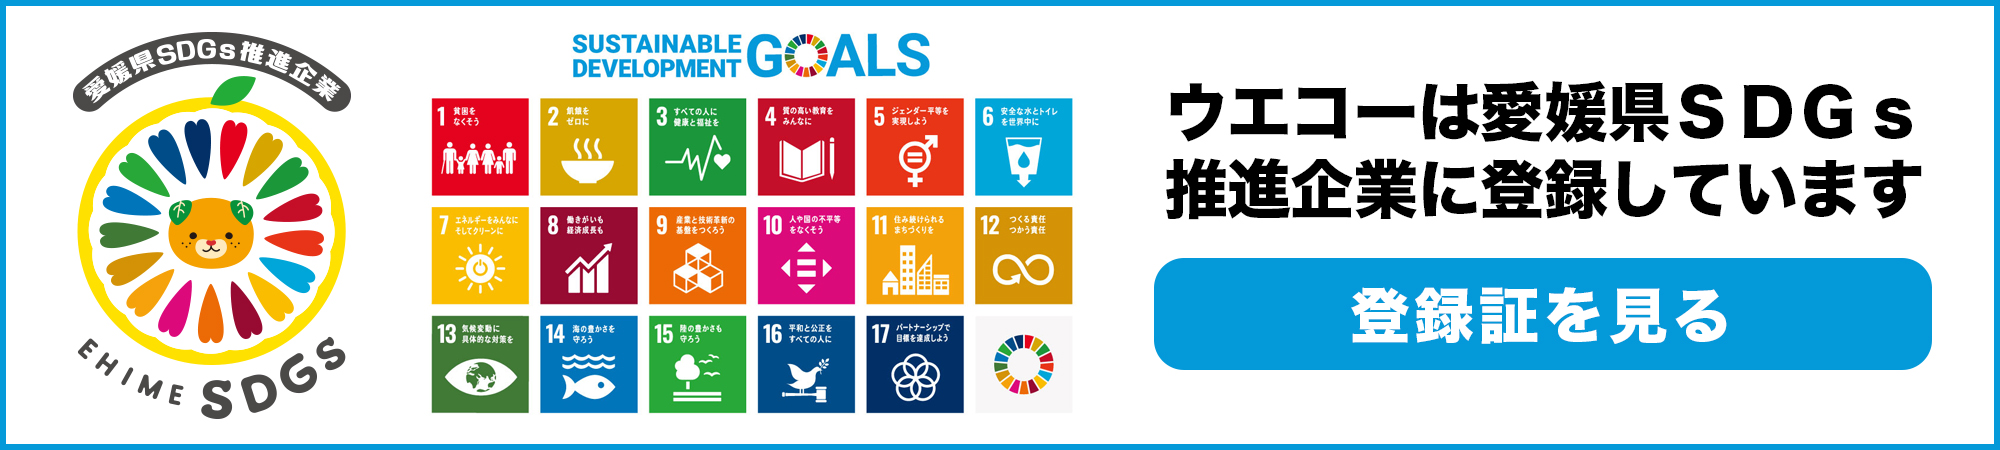 有限会社ウエコーは、愛媛県SDGs推進企業に登録されております。